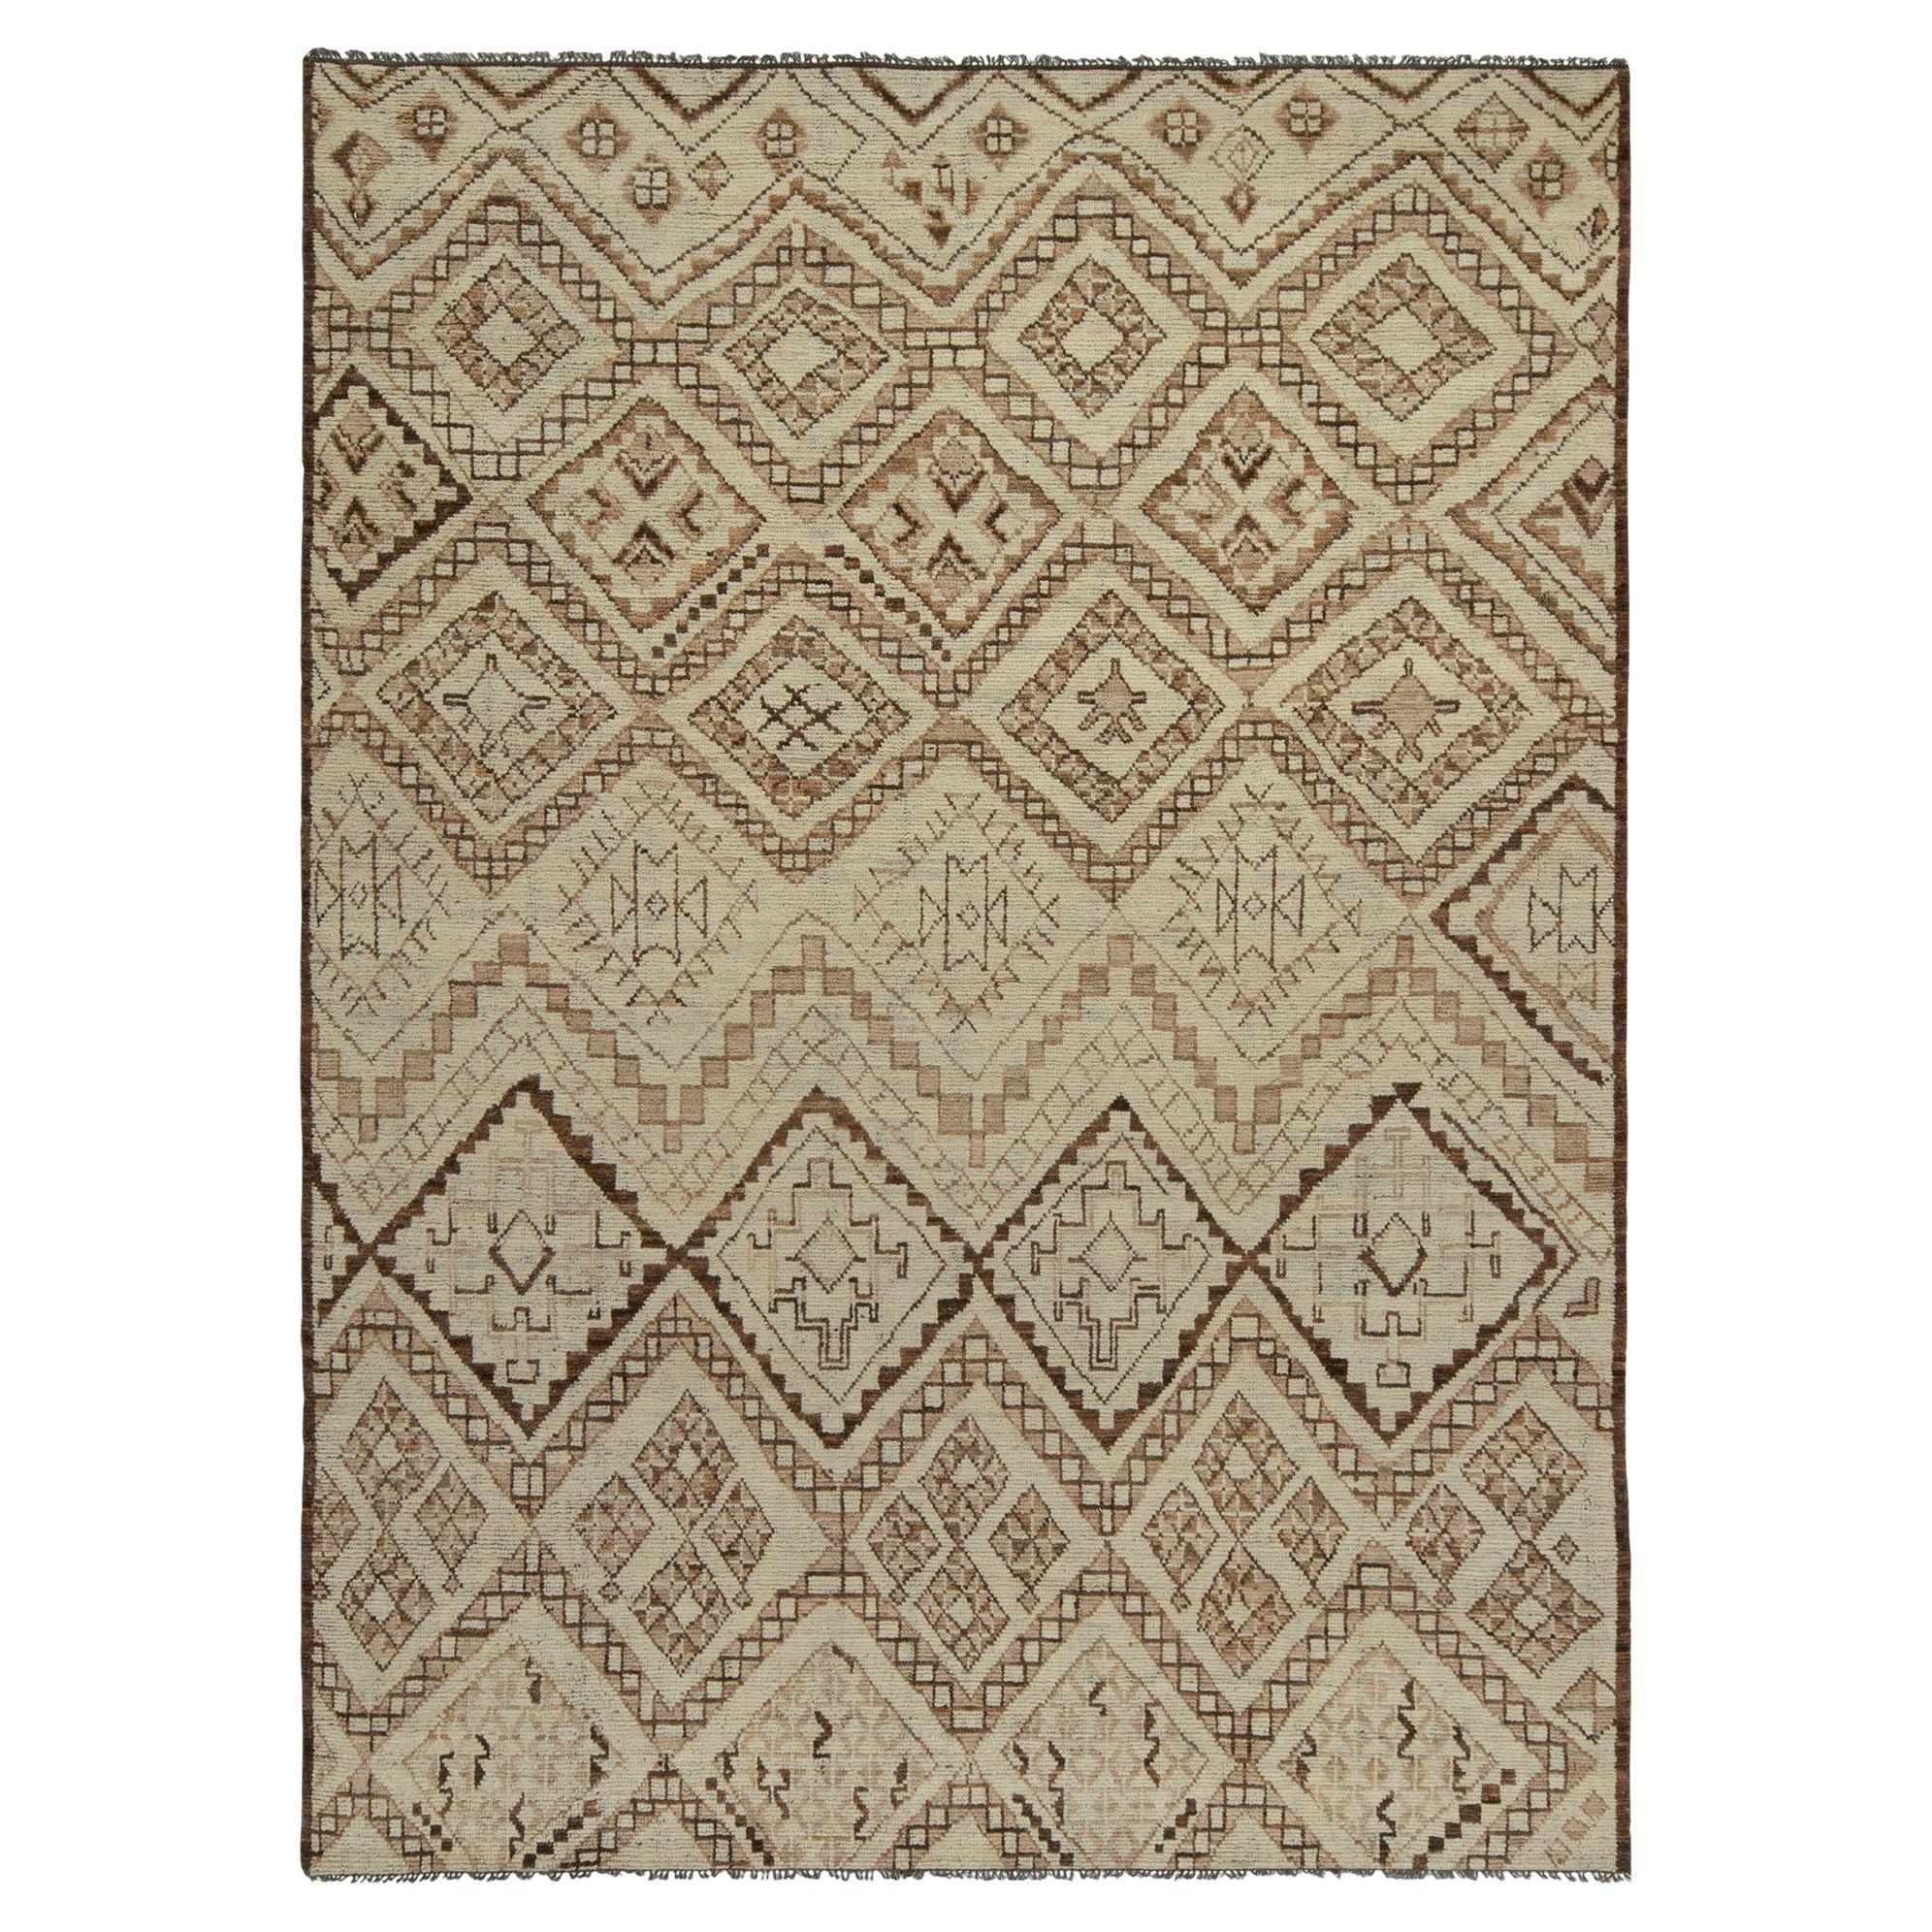 Tapis & Kilims - Tapis de style marocain en motifs géométriques tribaux beige-marron